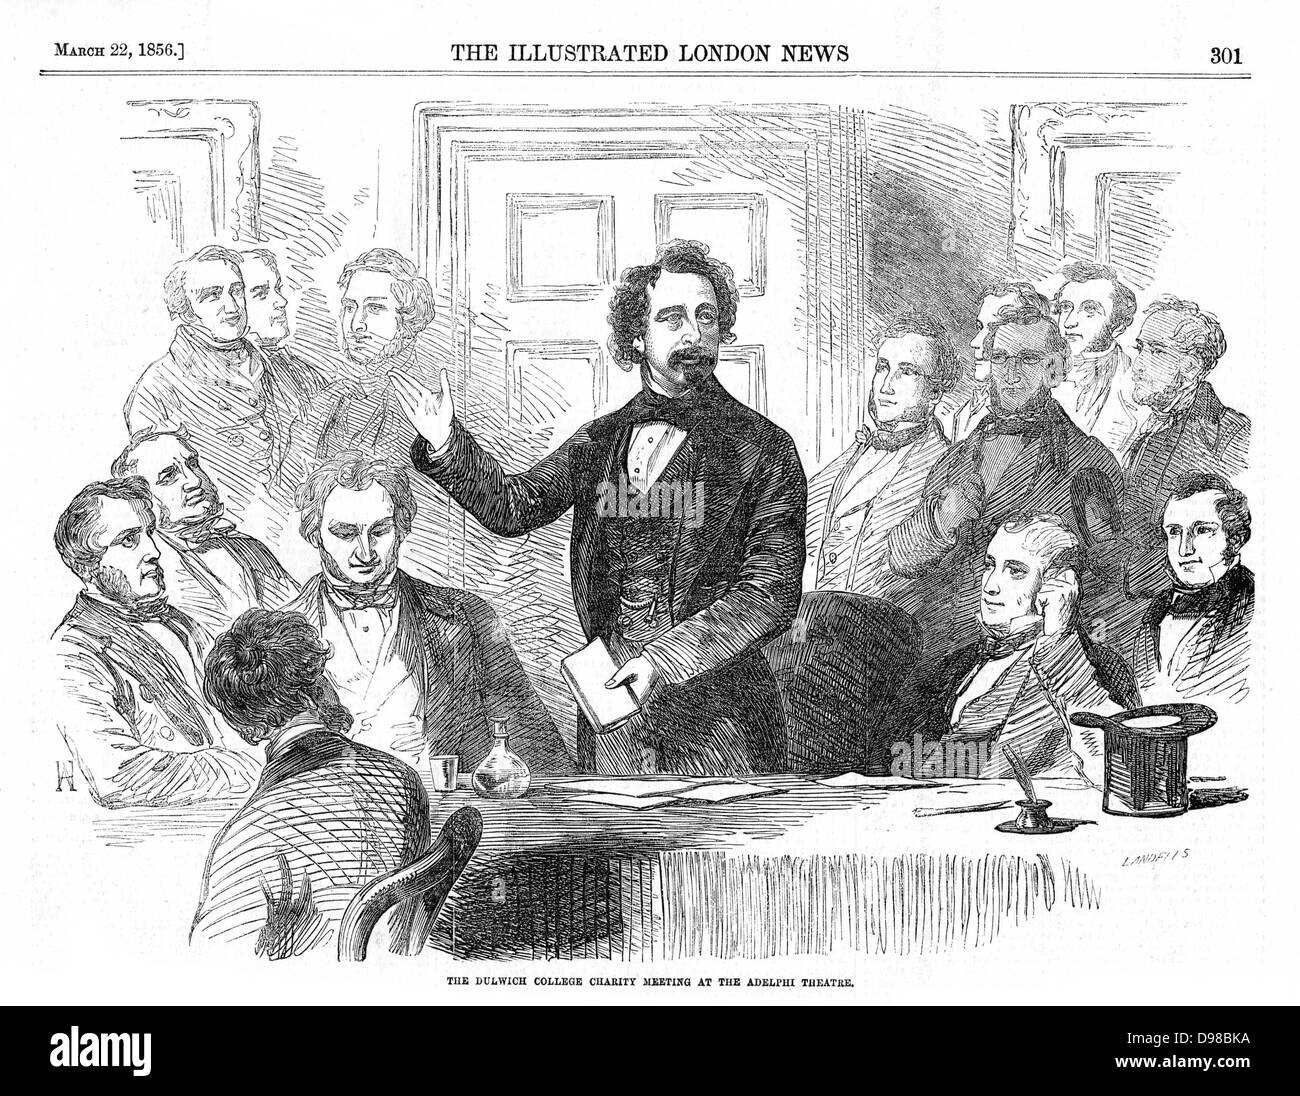 Charles Dickens (1812-70), englischer Schriftsteller und Journalist auf einem Dulwich College Charity treffen. Von "Llustrated London News, 22. März 1856. Stockfoto